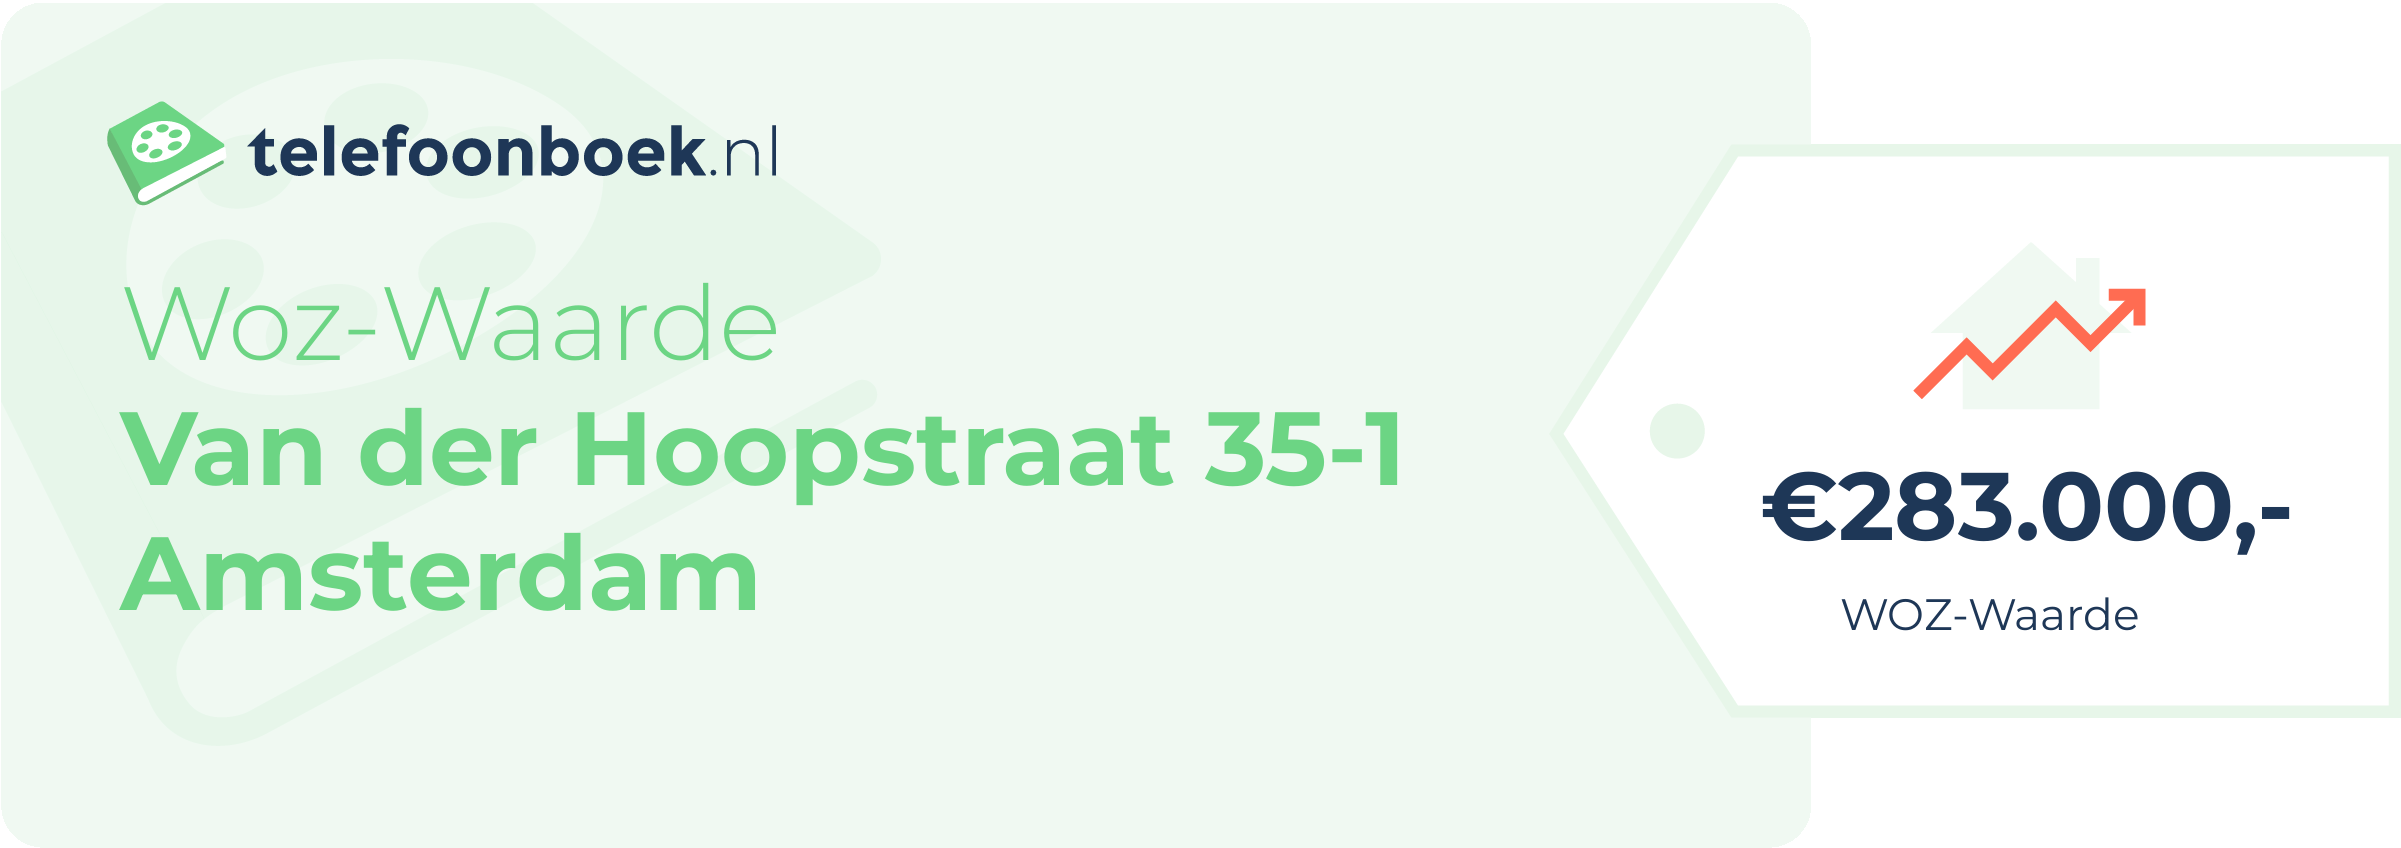 WOZ-waarde Van Der Hoopstraat 35-1 Amsterdam